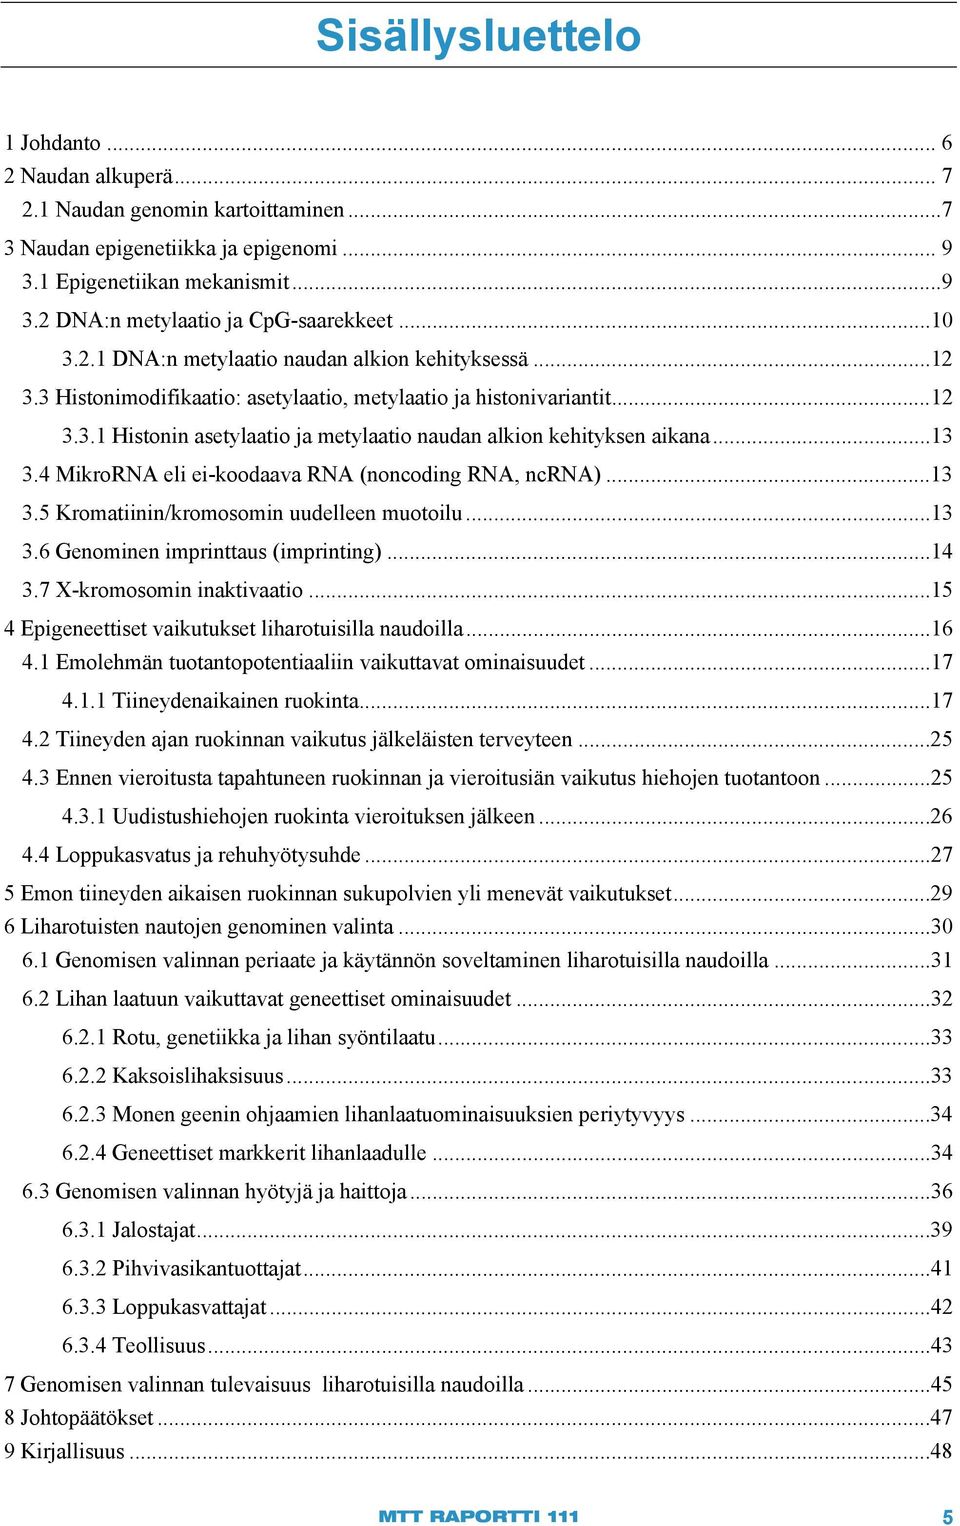 ..13 3.4 MikroRNA eli ei-koodaava RNA (noncoding RNA, ncrna)... 13 3.5 Kromatiinin/kromosomin uudelleen muotoilu... 13 3.6 Genominen imprinttaus (imprinting)... 14 3.7 X-kromosomin inaktivaatio.